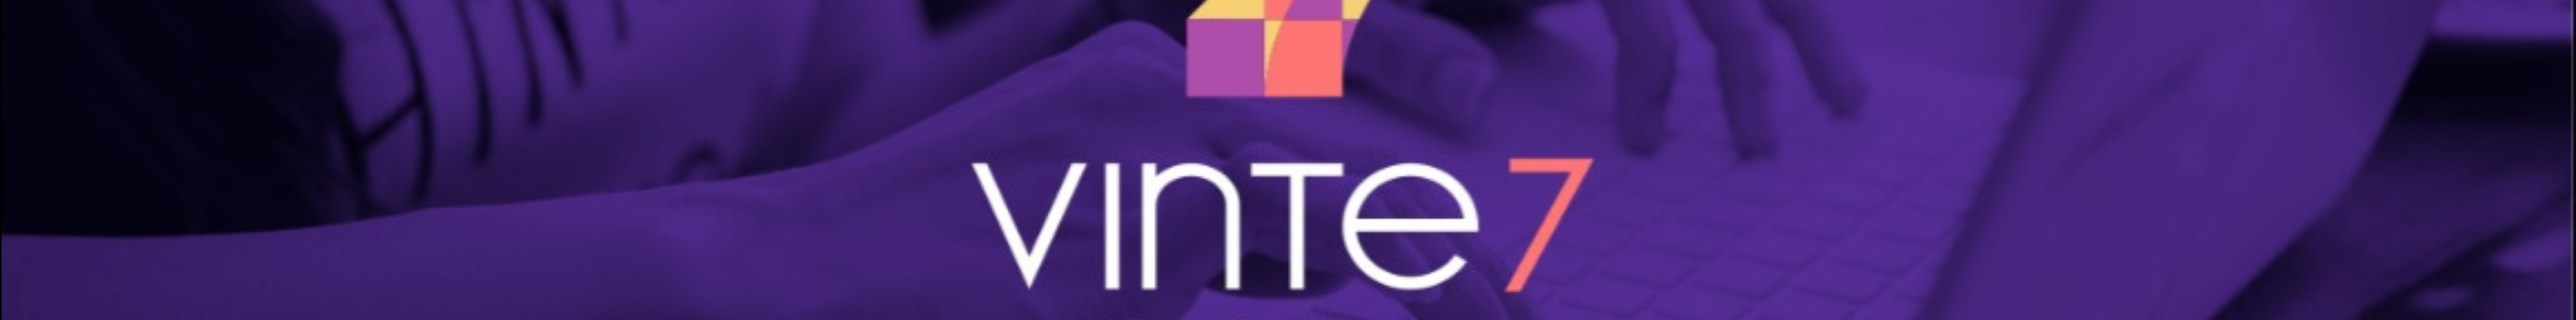 vinte7 Brand&Design's profile banner